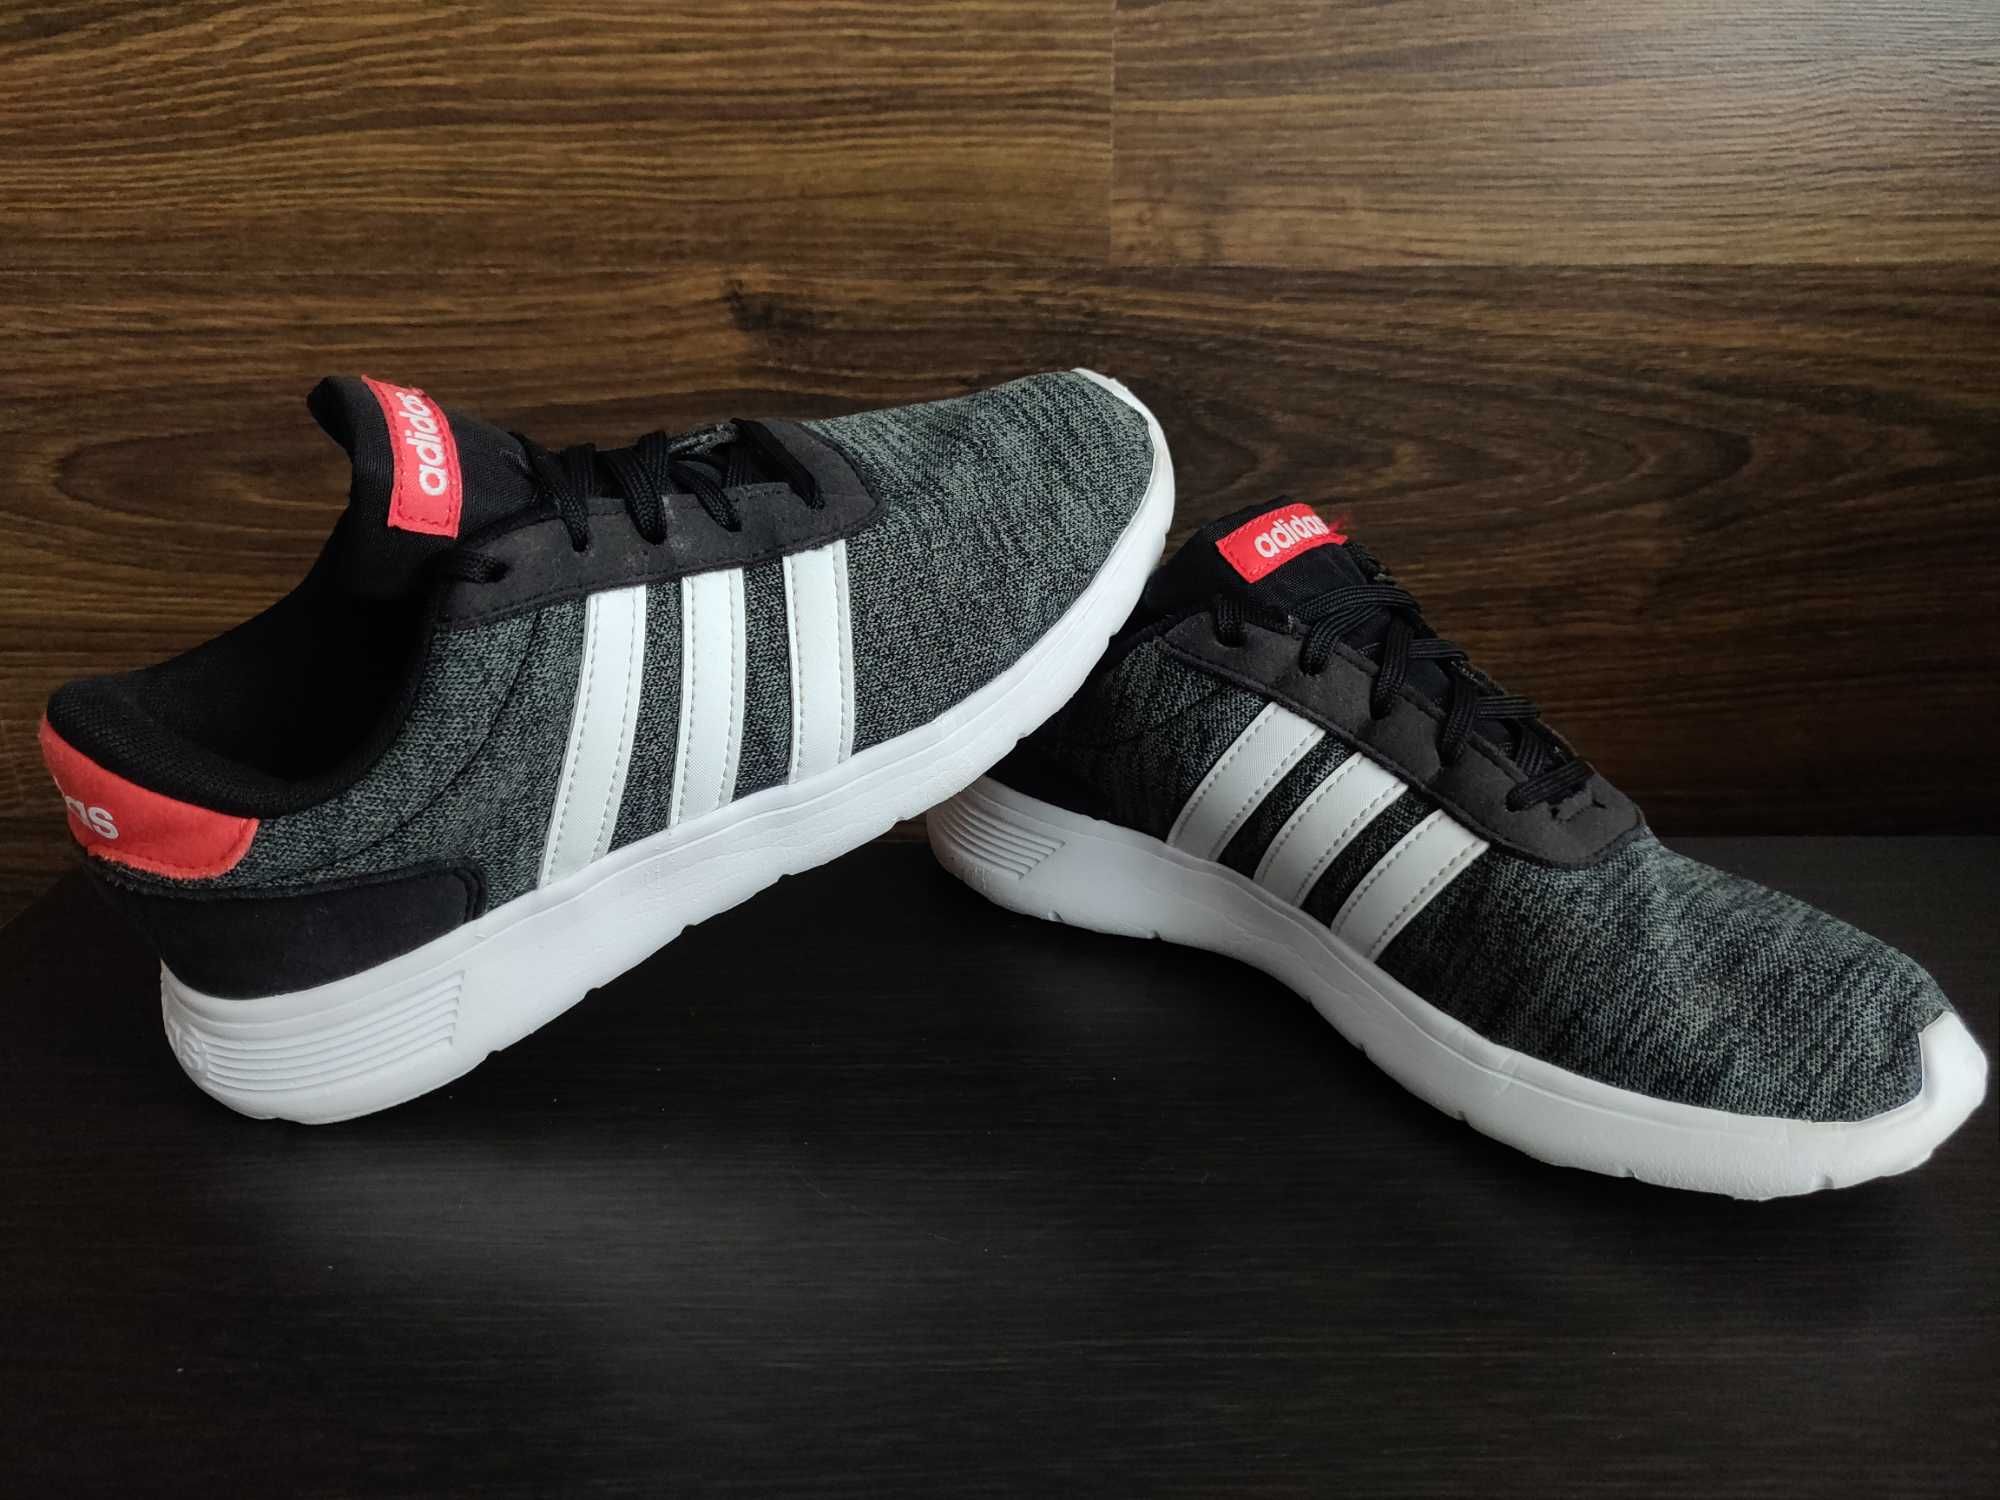 Кроссовки Adidas оригинал 2019 г. р. 35, стелька 21-21,5 см. серые